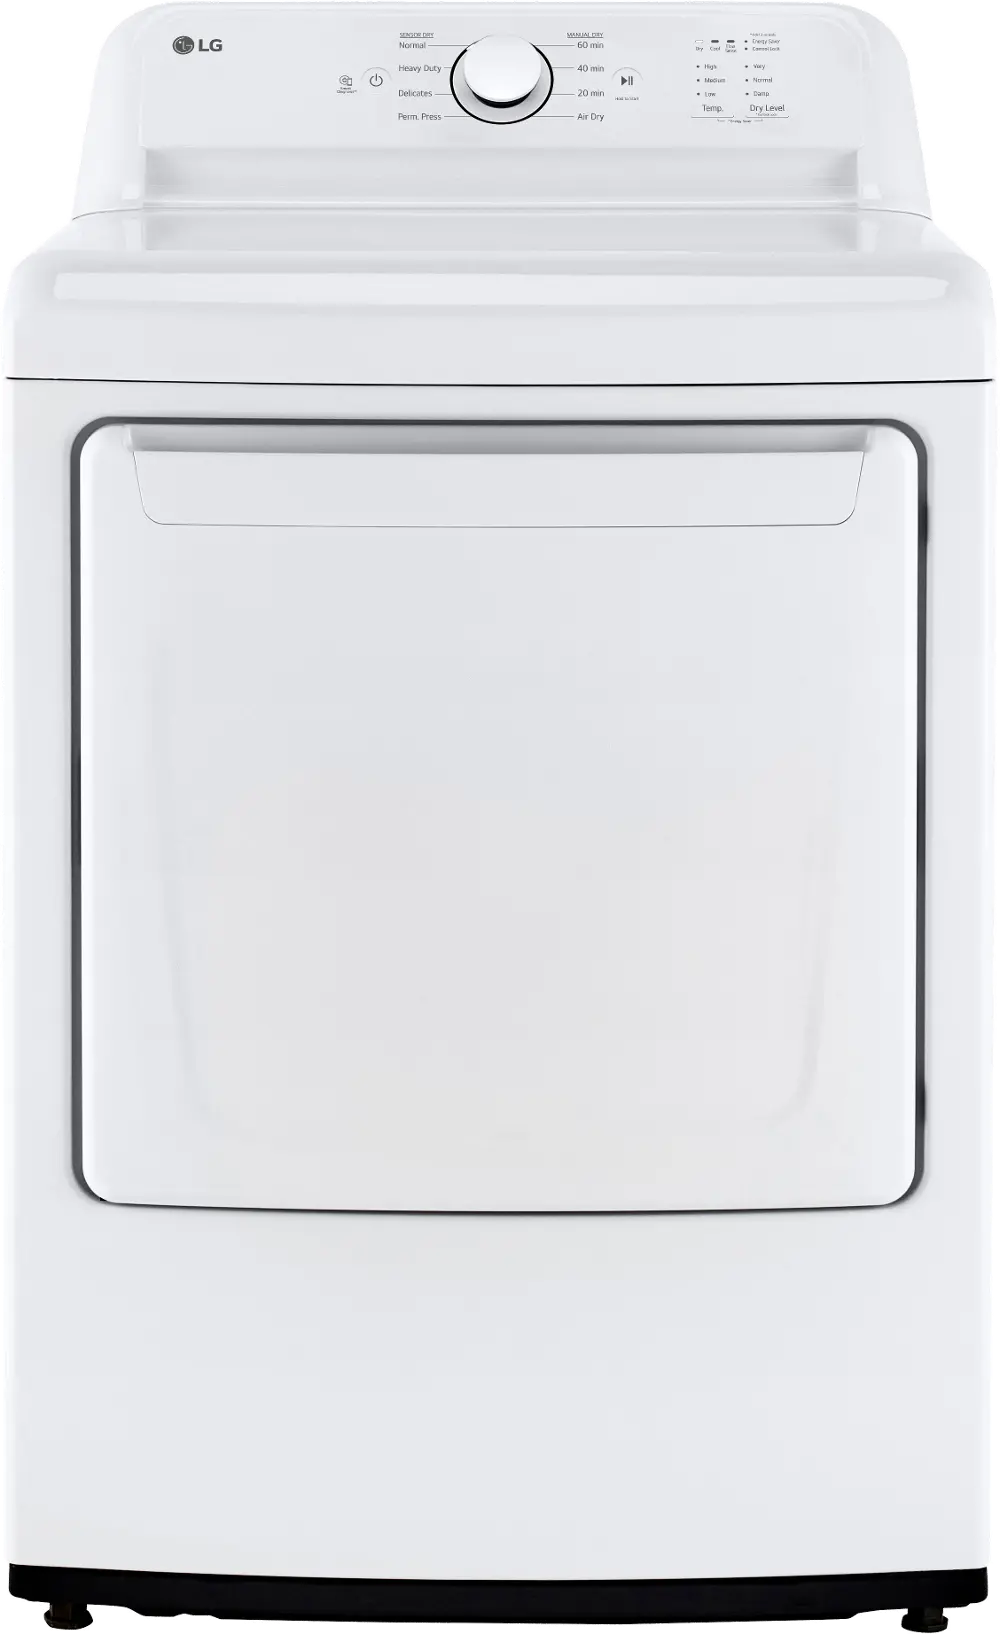 DLG6101W LG 7.4 cu ft Gas Dryer - White 6100-1